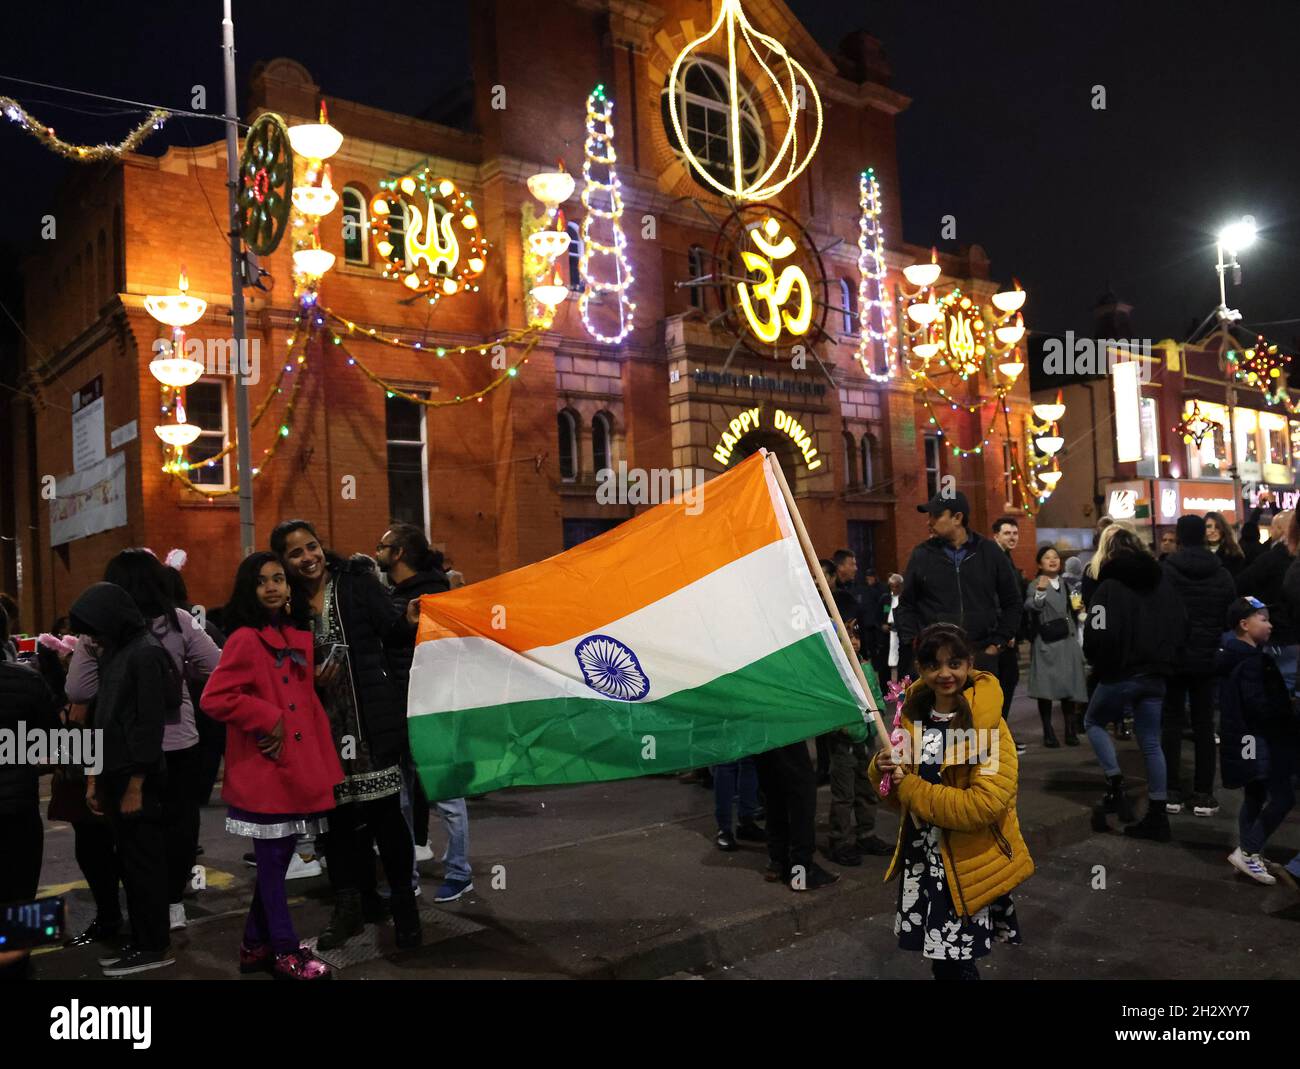 Leicester, Leicestershire, Großbritannien. Oktober 2021. Ein Mädchen schwenkt die Flagge Indiens auf der Goldenen Meile, nachdem die Diwali-Lichter eingeschaltet wurden, was sich von der normalen Veranstaltung Unterschied, da es keine Hauptbühne oder ein Feuerwerk gab, weil Covid-19 Sorgen machte. Credit Darren Staples/Alamy Live News. Stockfoto